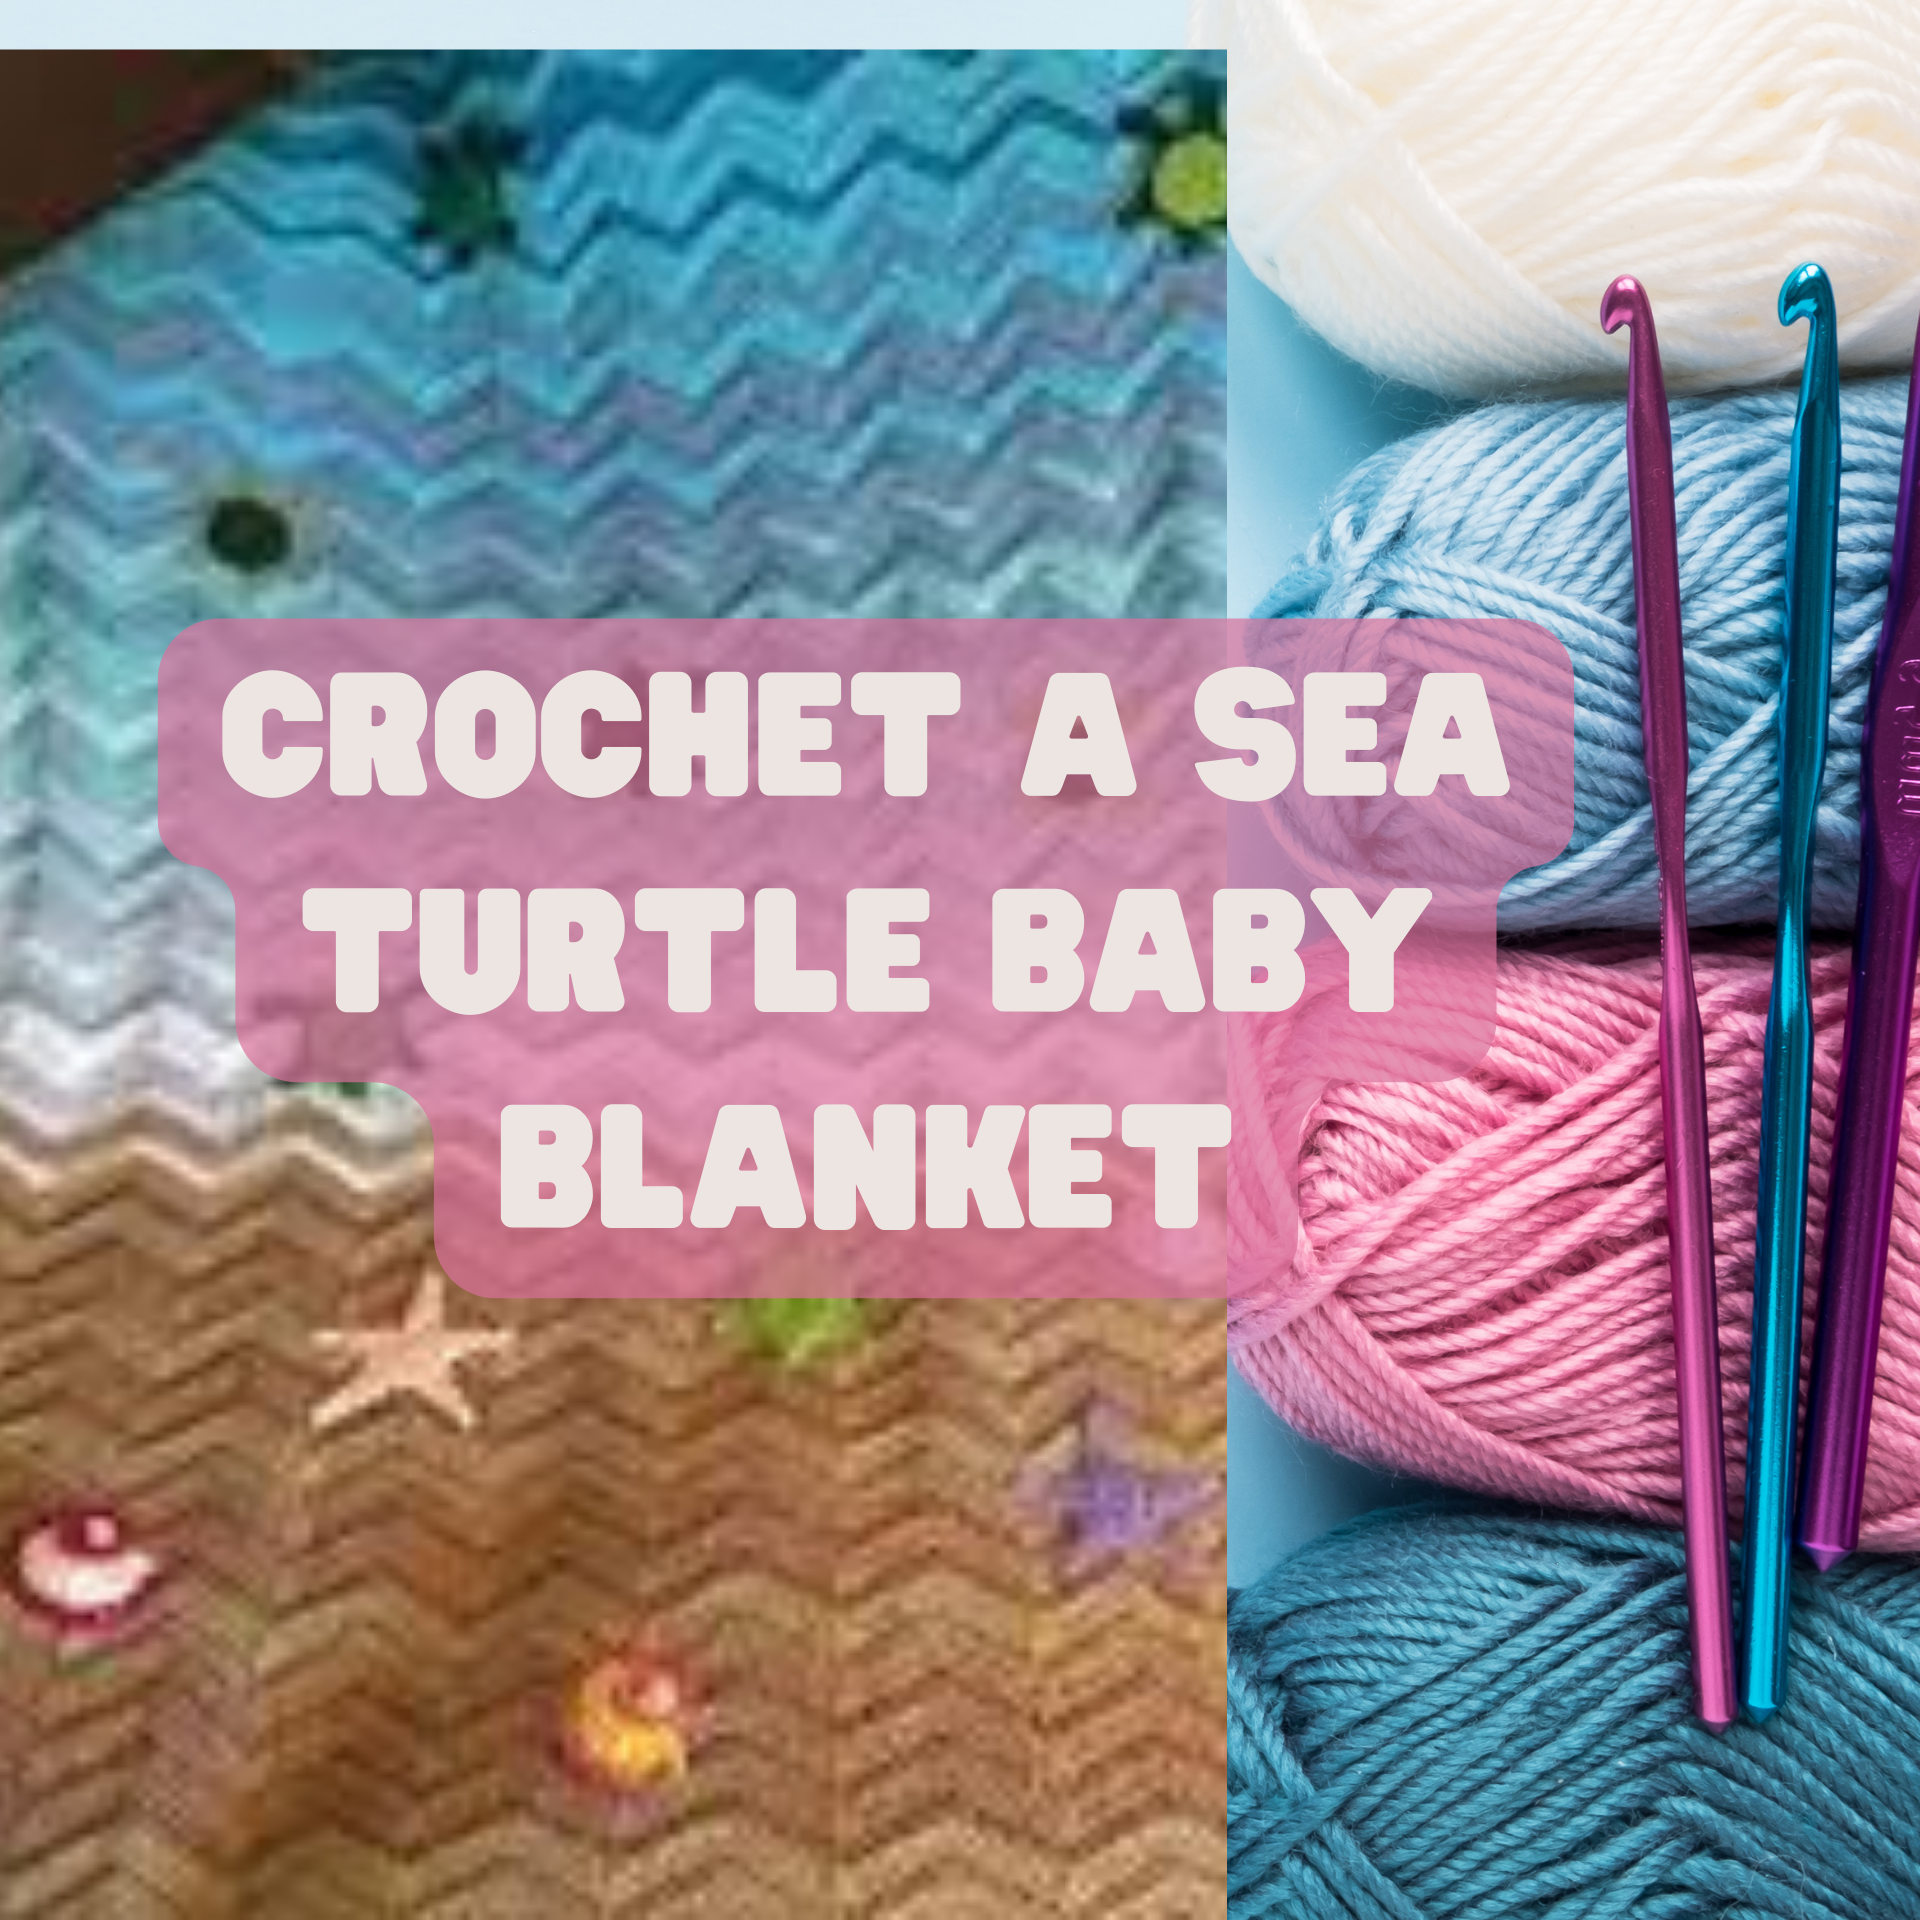 Crochet a Sea Turtle Baby Blanket